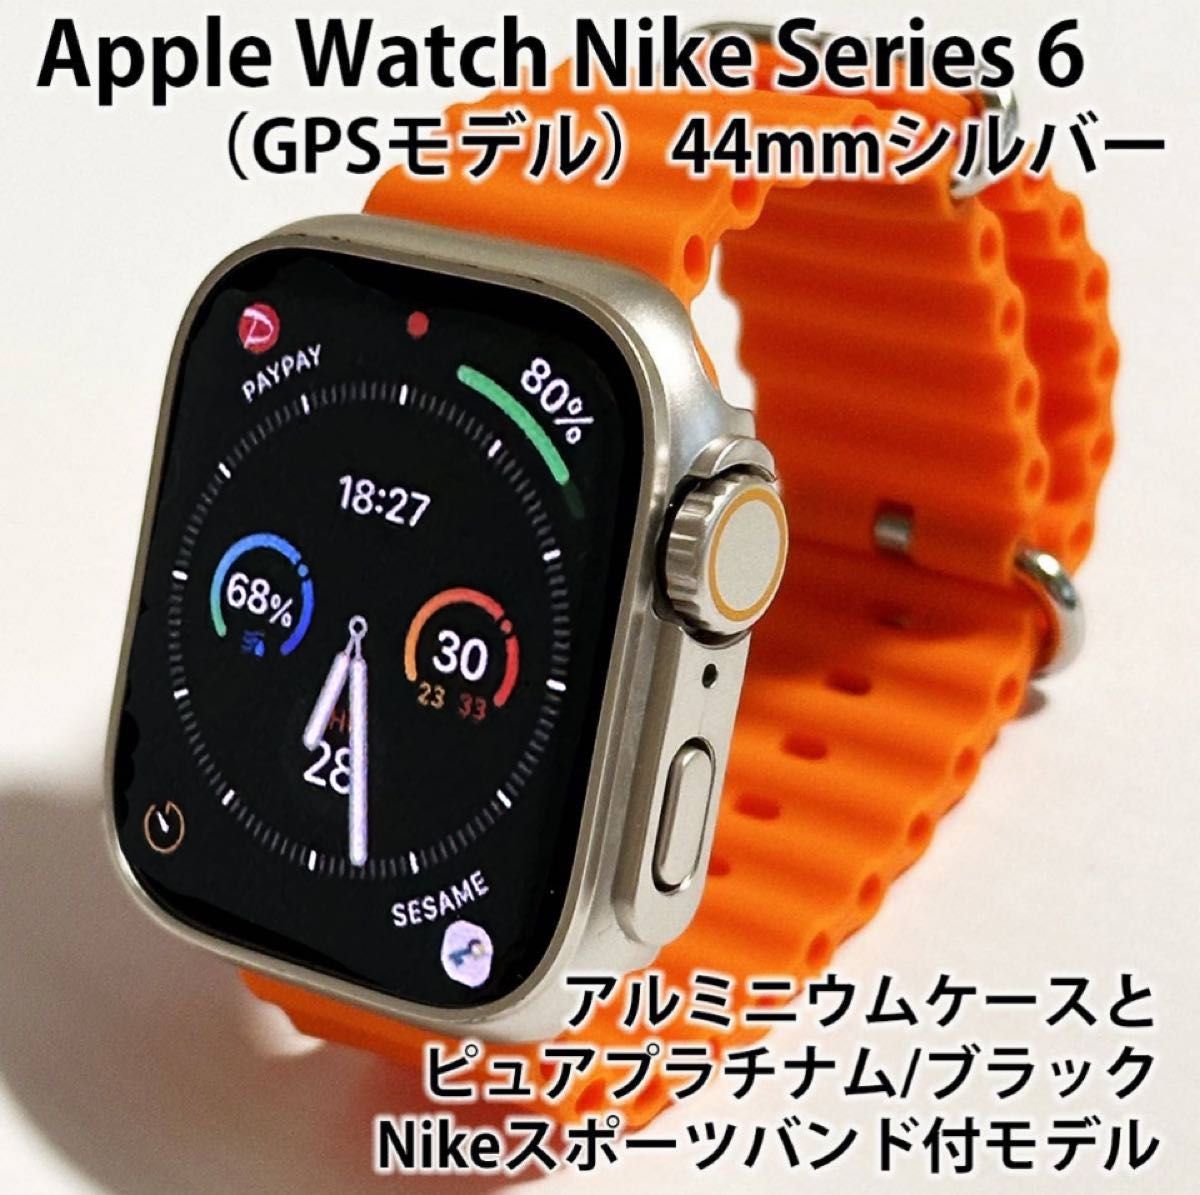 Apple Watch Nike Series 6 (GPSモデル) 44mm シルバーアルミニウム